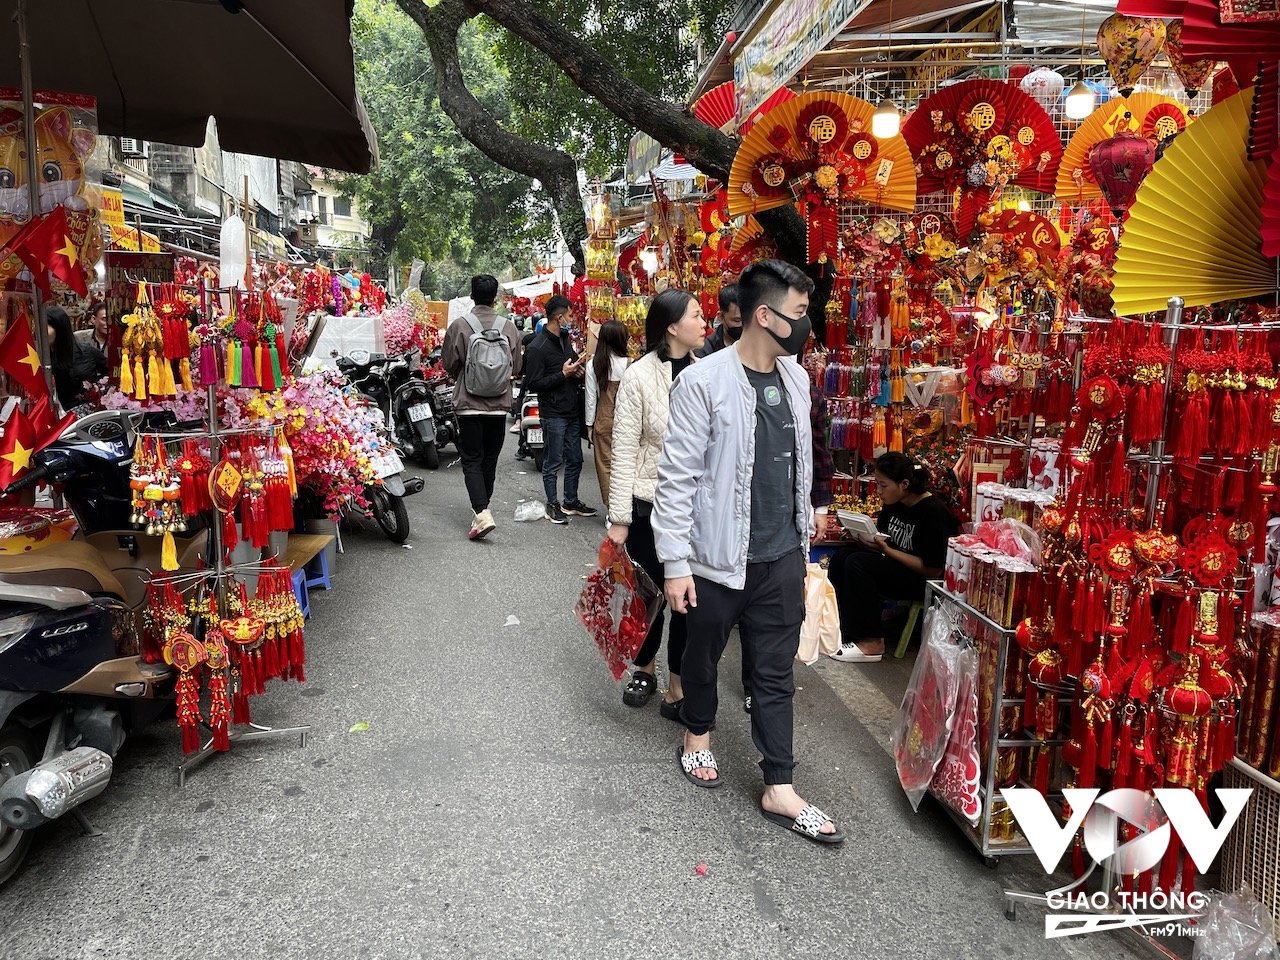 Hằng năm, khi chợ hoa mở cửa phục vụ khách đi du xuân, mua sắm đồ tết thường thu hút rất đông người dân Hà Nội tới đây